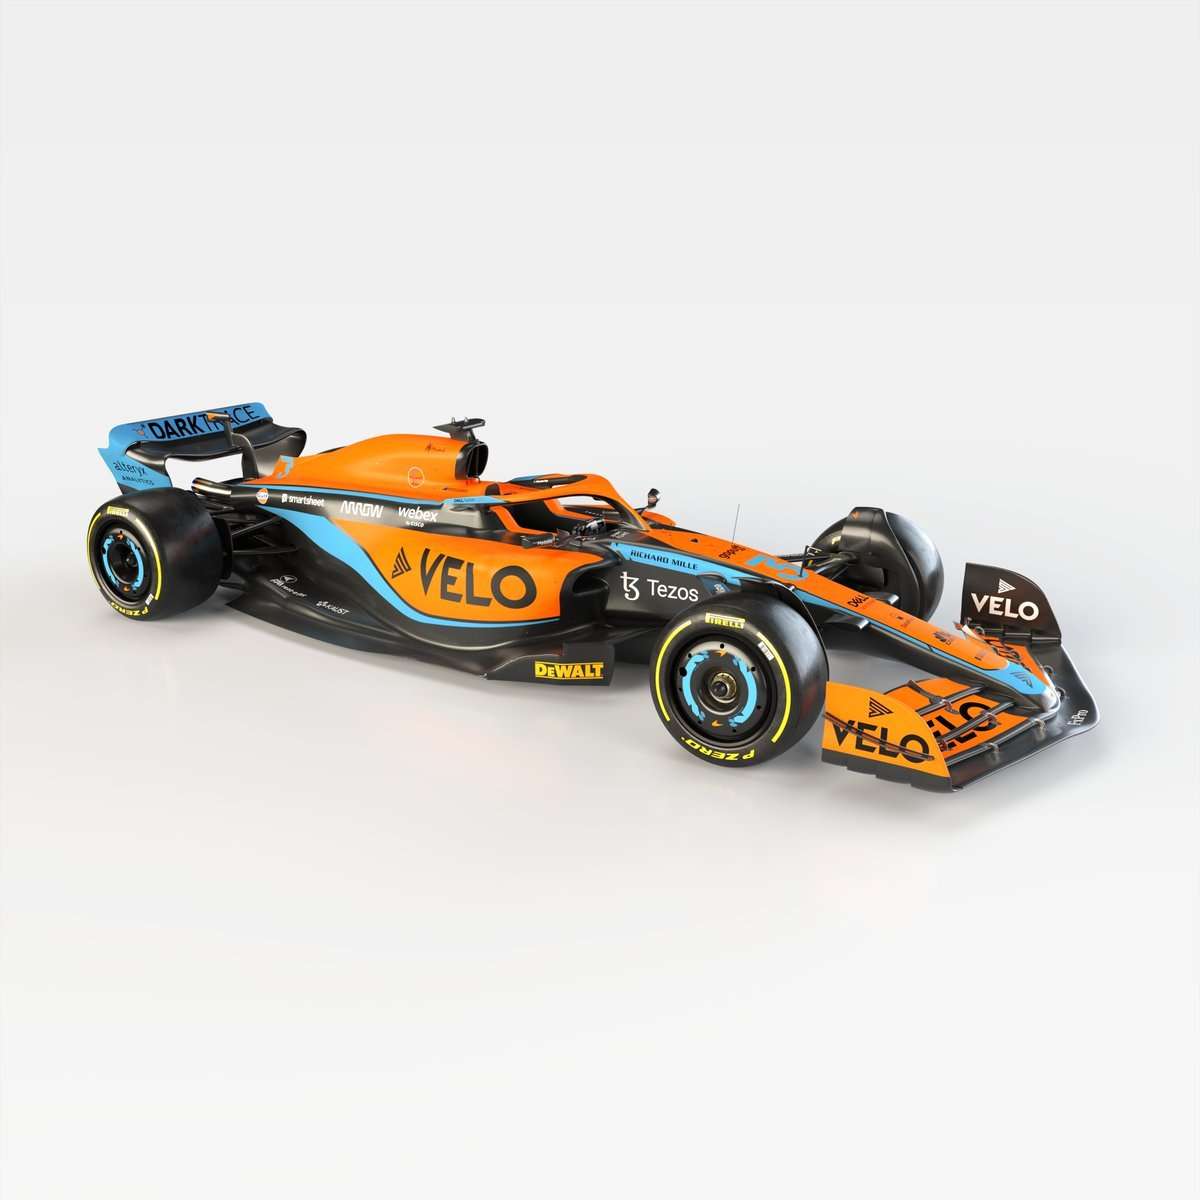 McLaren lança dois novos carros de corrida :: Notícias :: autoviva